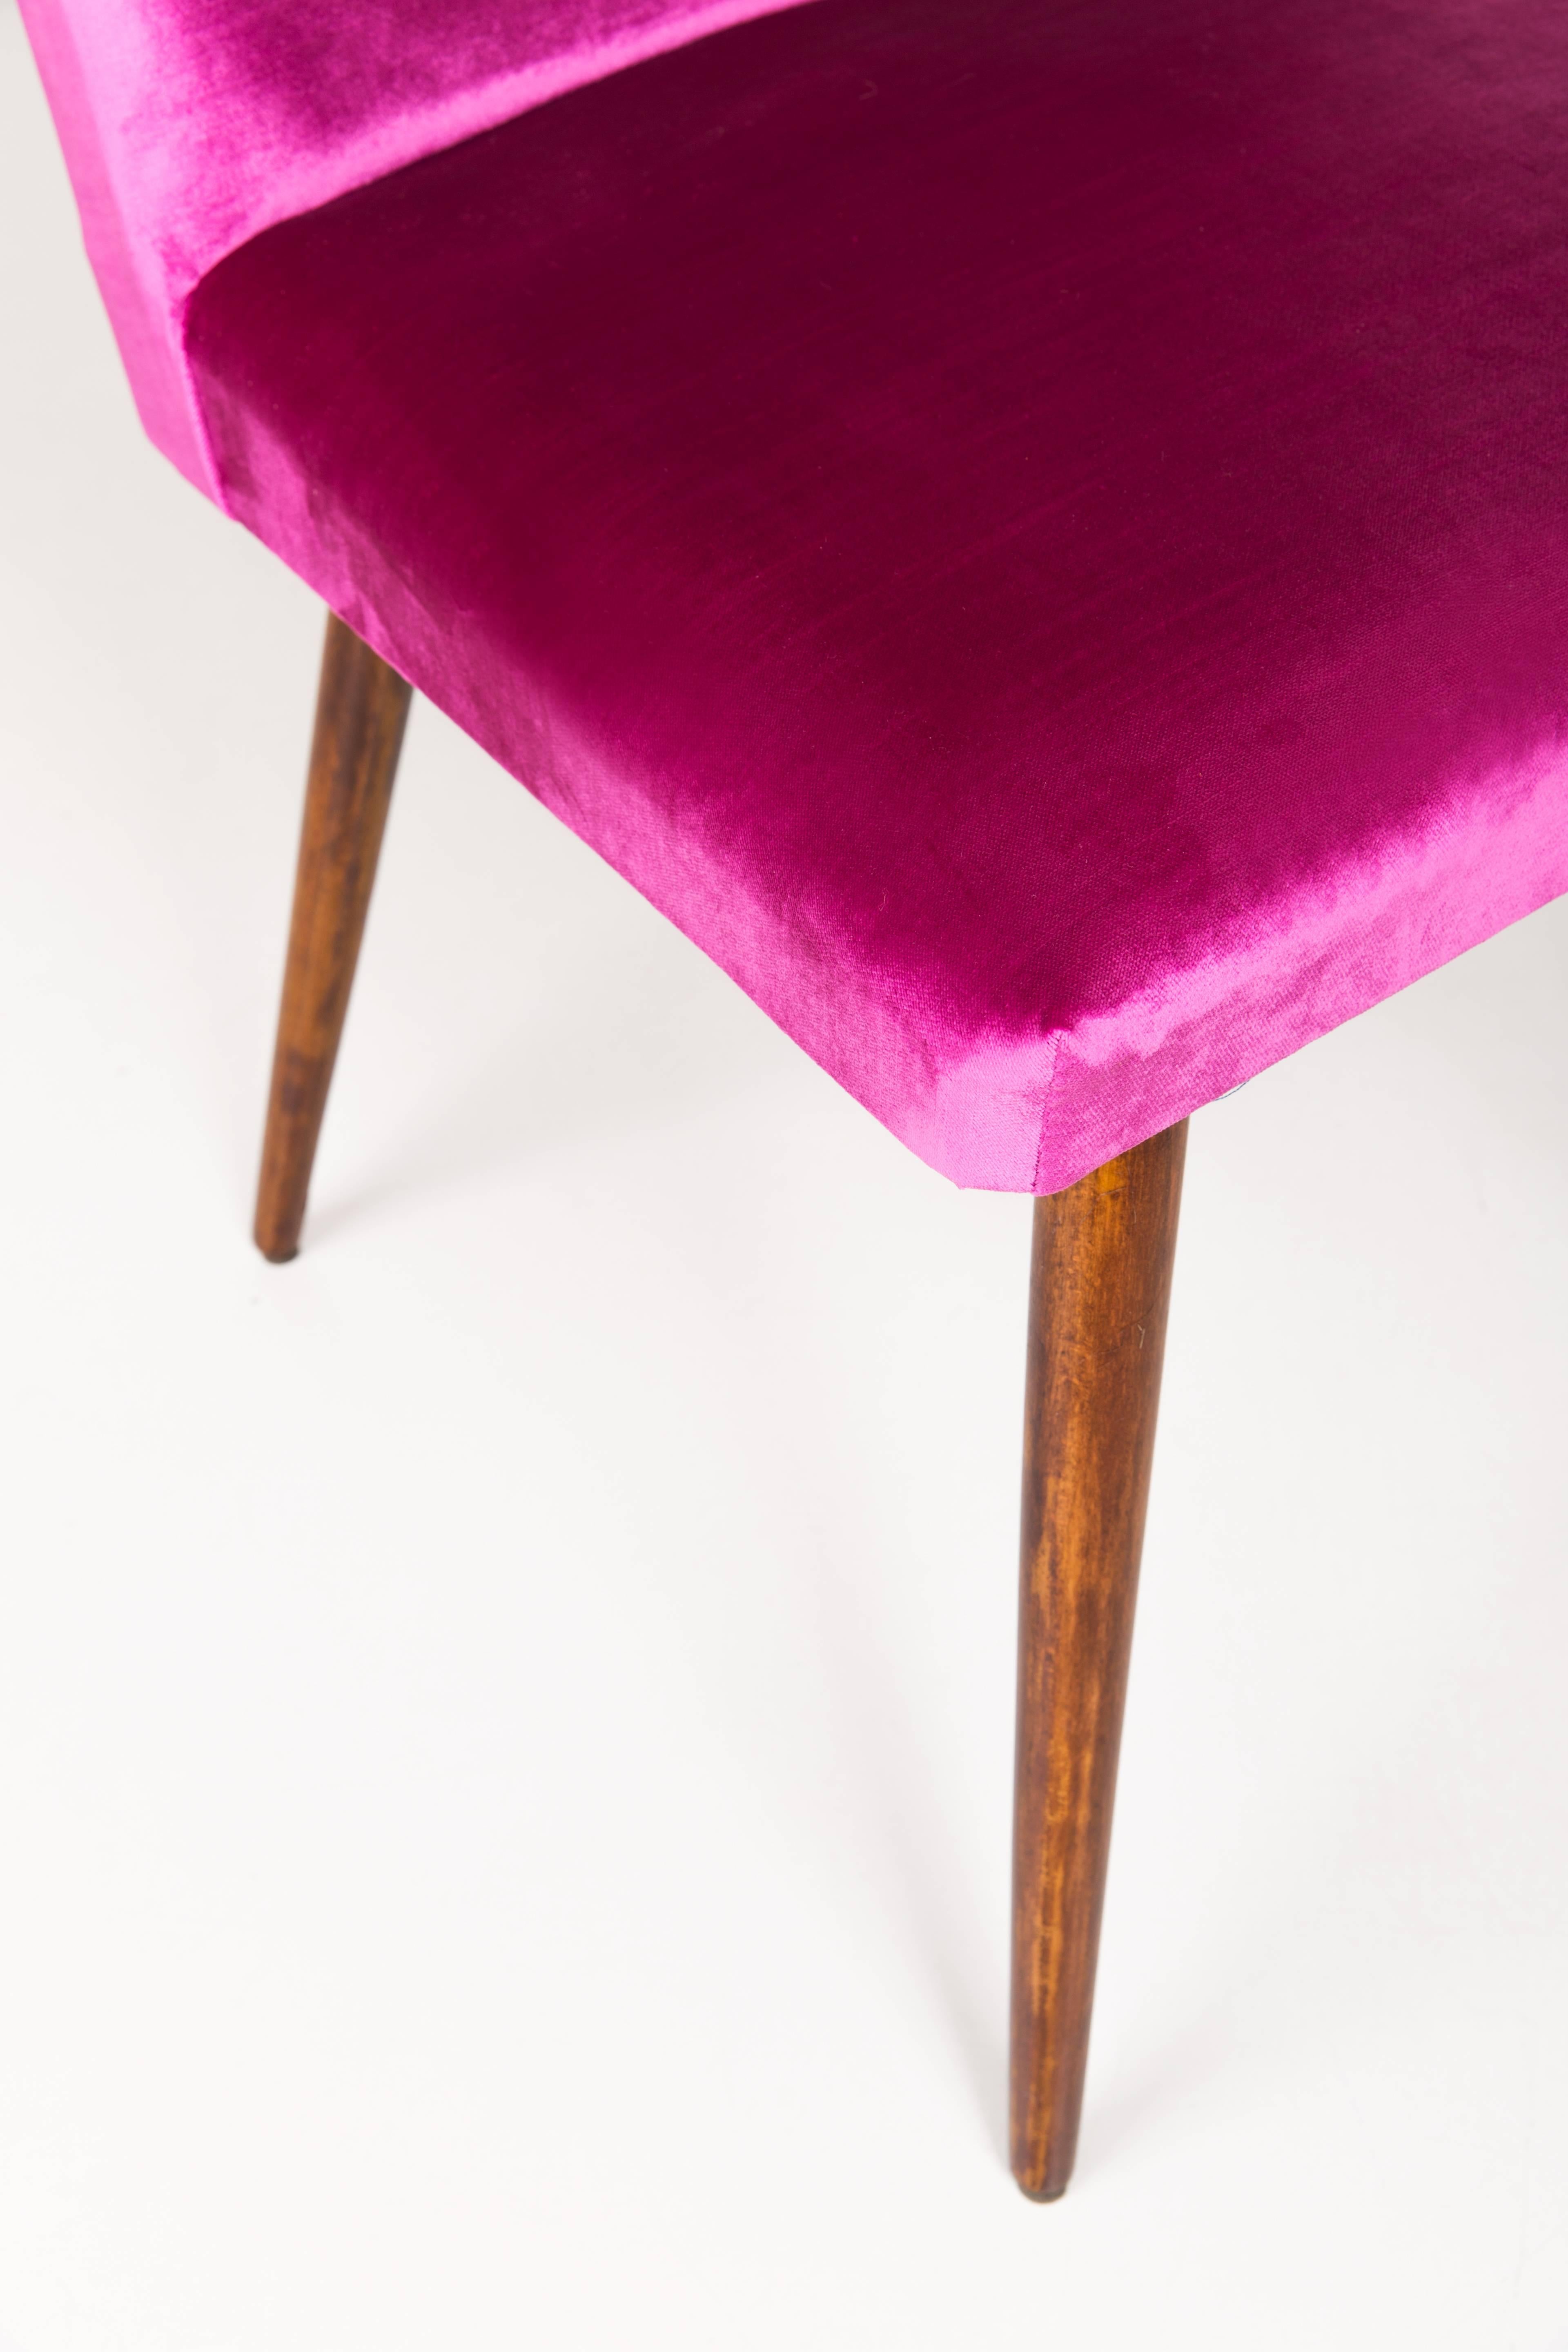 Une belle chaise produite dans les années 1960 après un rembourrage complet et un rafraîchissement des boiseries, confortable et stable. L'ensemble est recouvert d'un tissu de haute qualité et résistant.